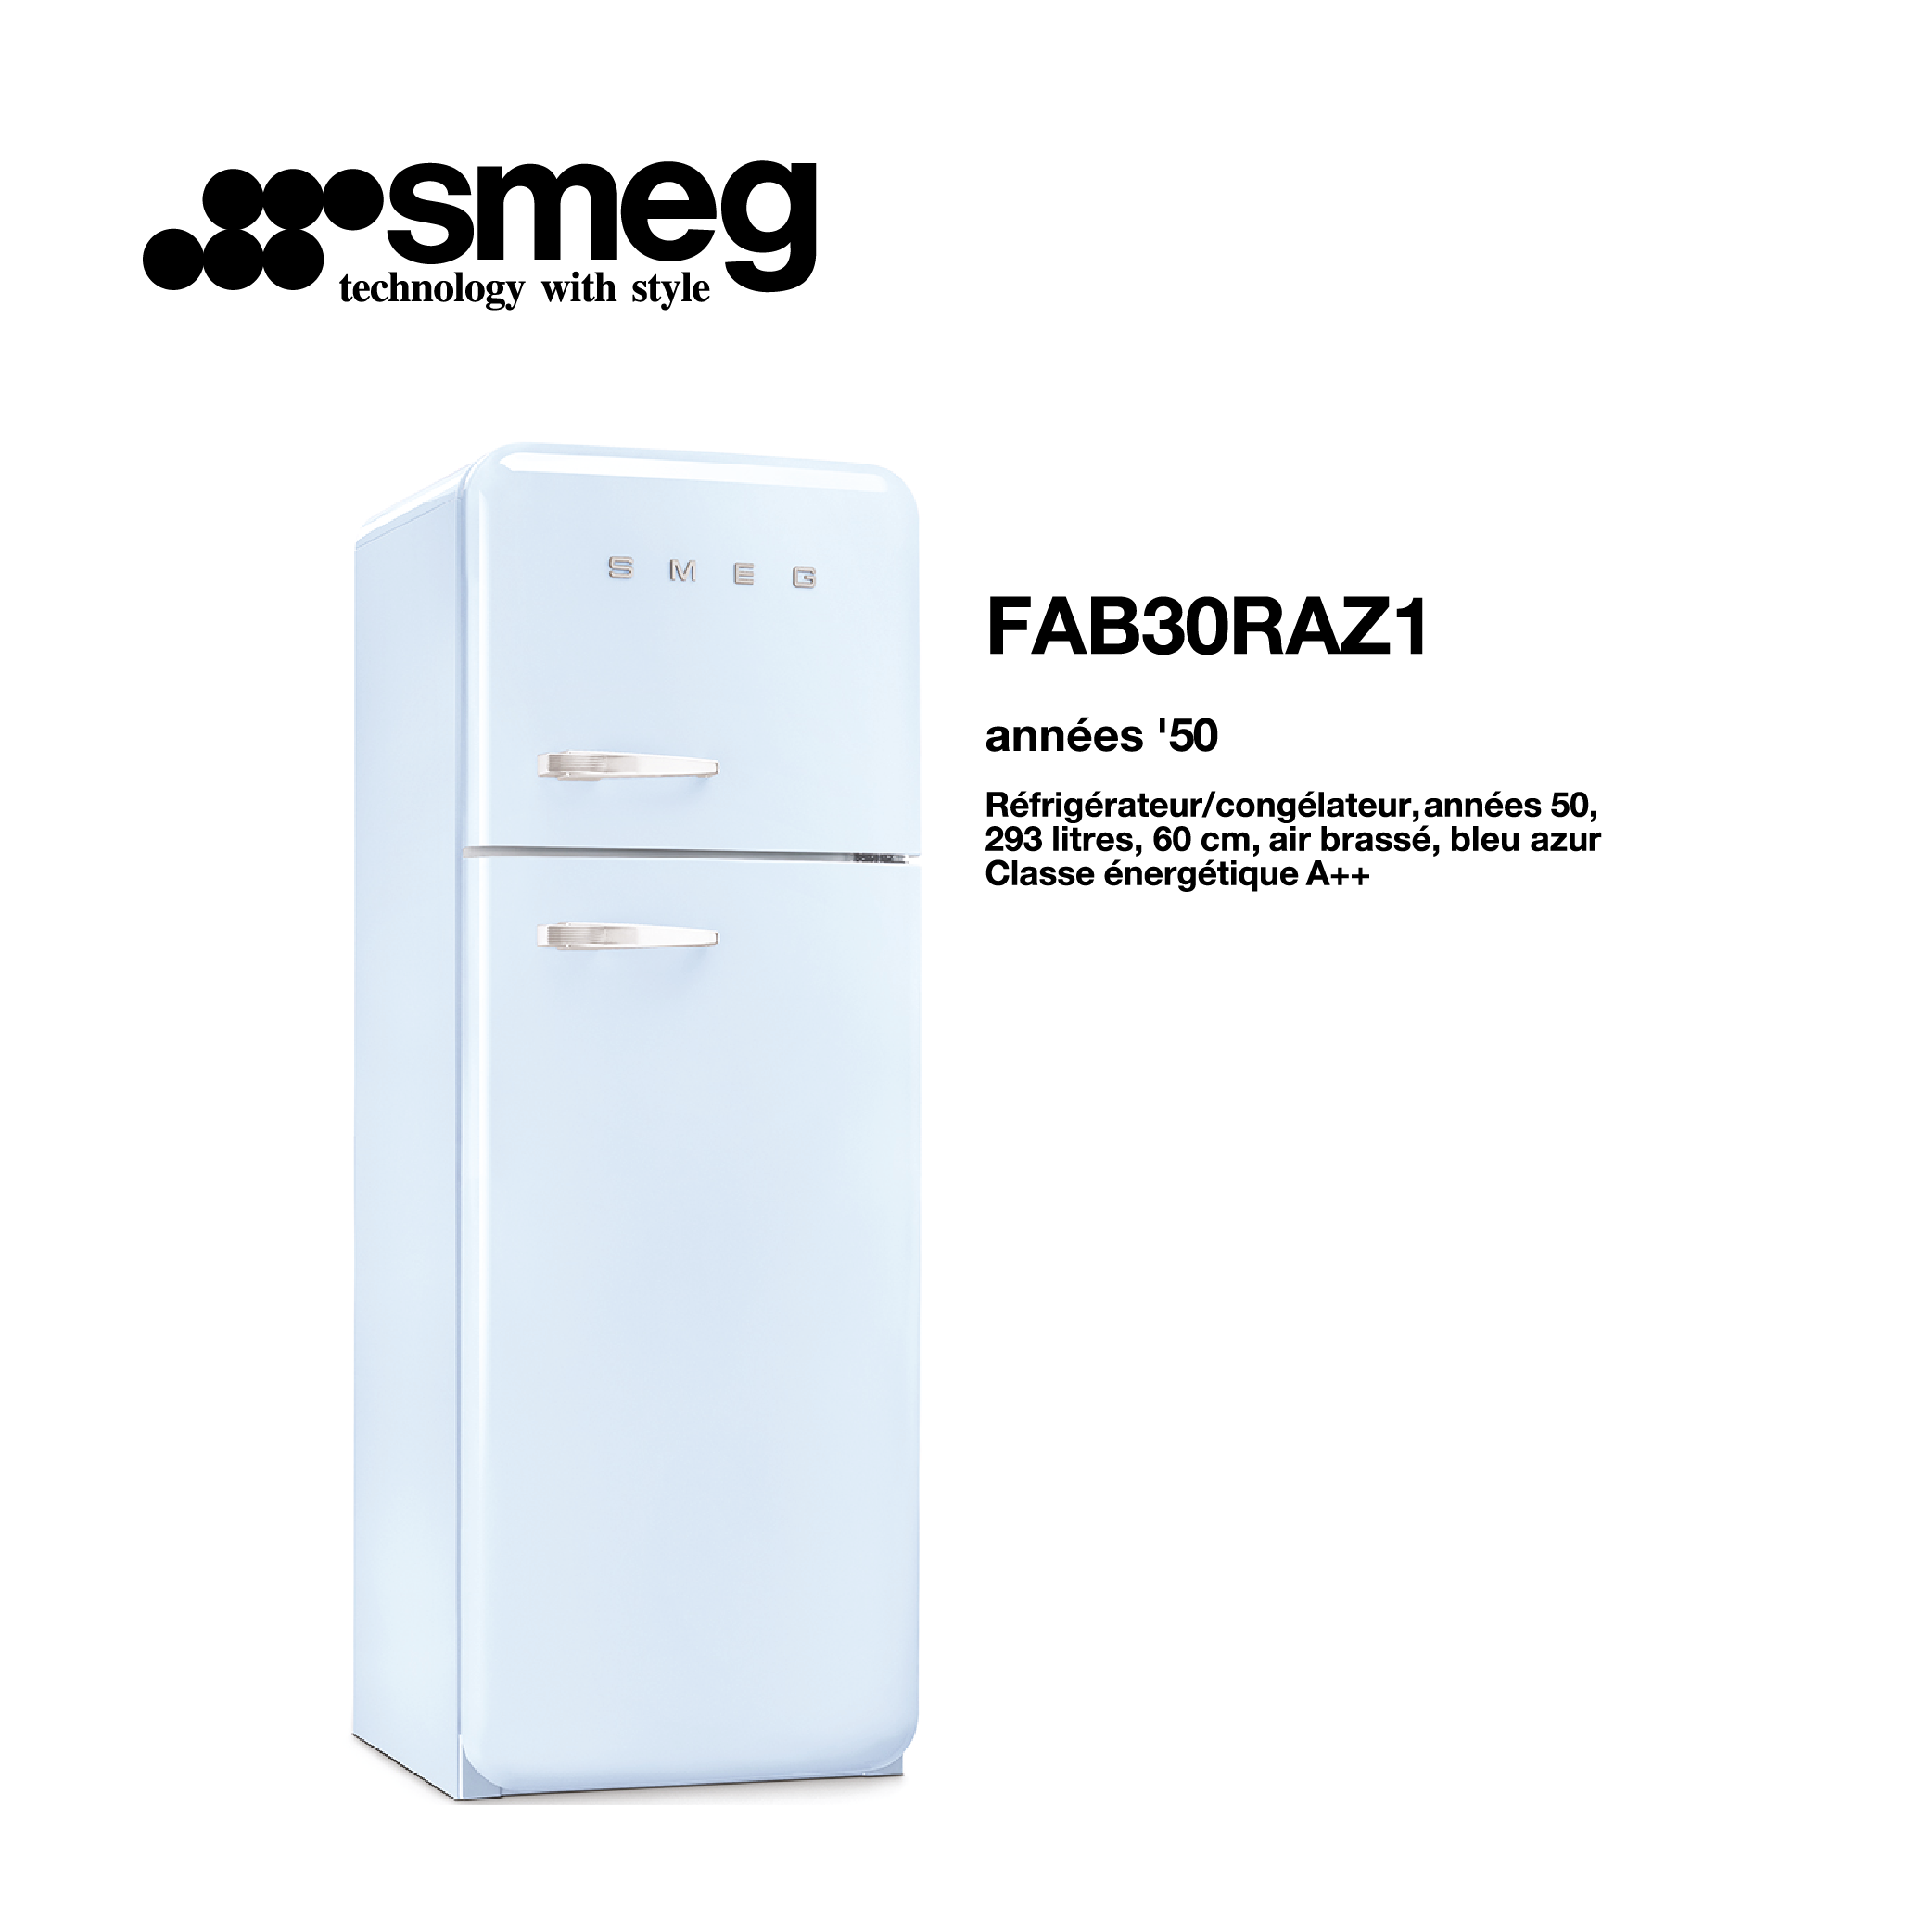 Réfrigérateur congélateur smeg Air brassé 293 Litre 60cm couleur Bleu azur 2 portes FAB30RAZ1